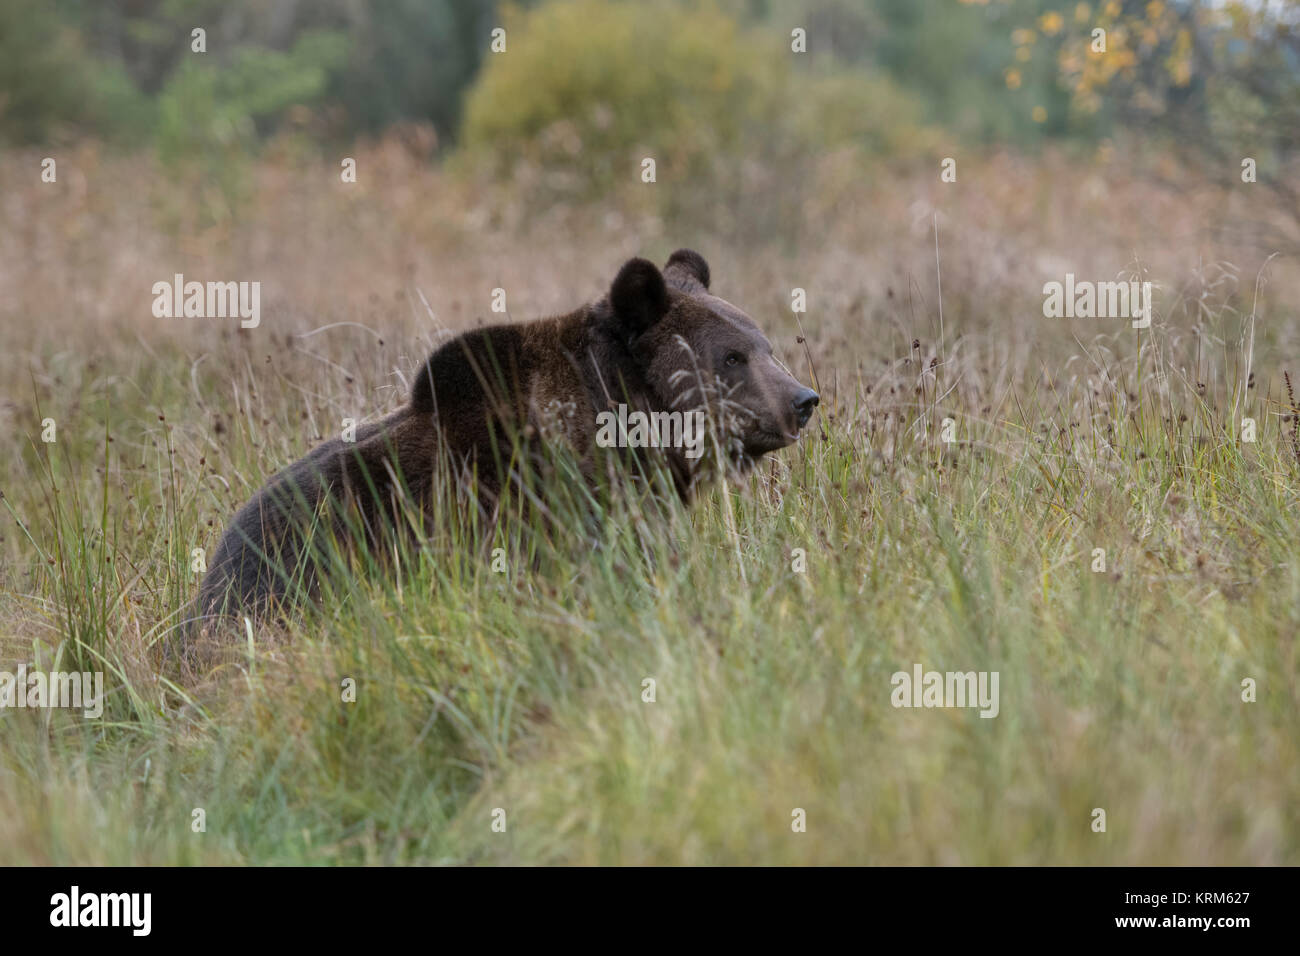 /Braunbaer Braunbär (Ursus arctos), sitzend im hohen Gras auf einer nassen Wiese, Sumpf, Moor, Marschland, Beobachten, schöne herbstliche Farben, Europa. Stockfoto